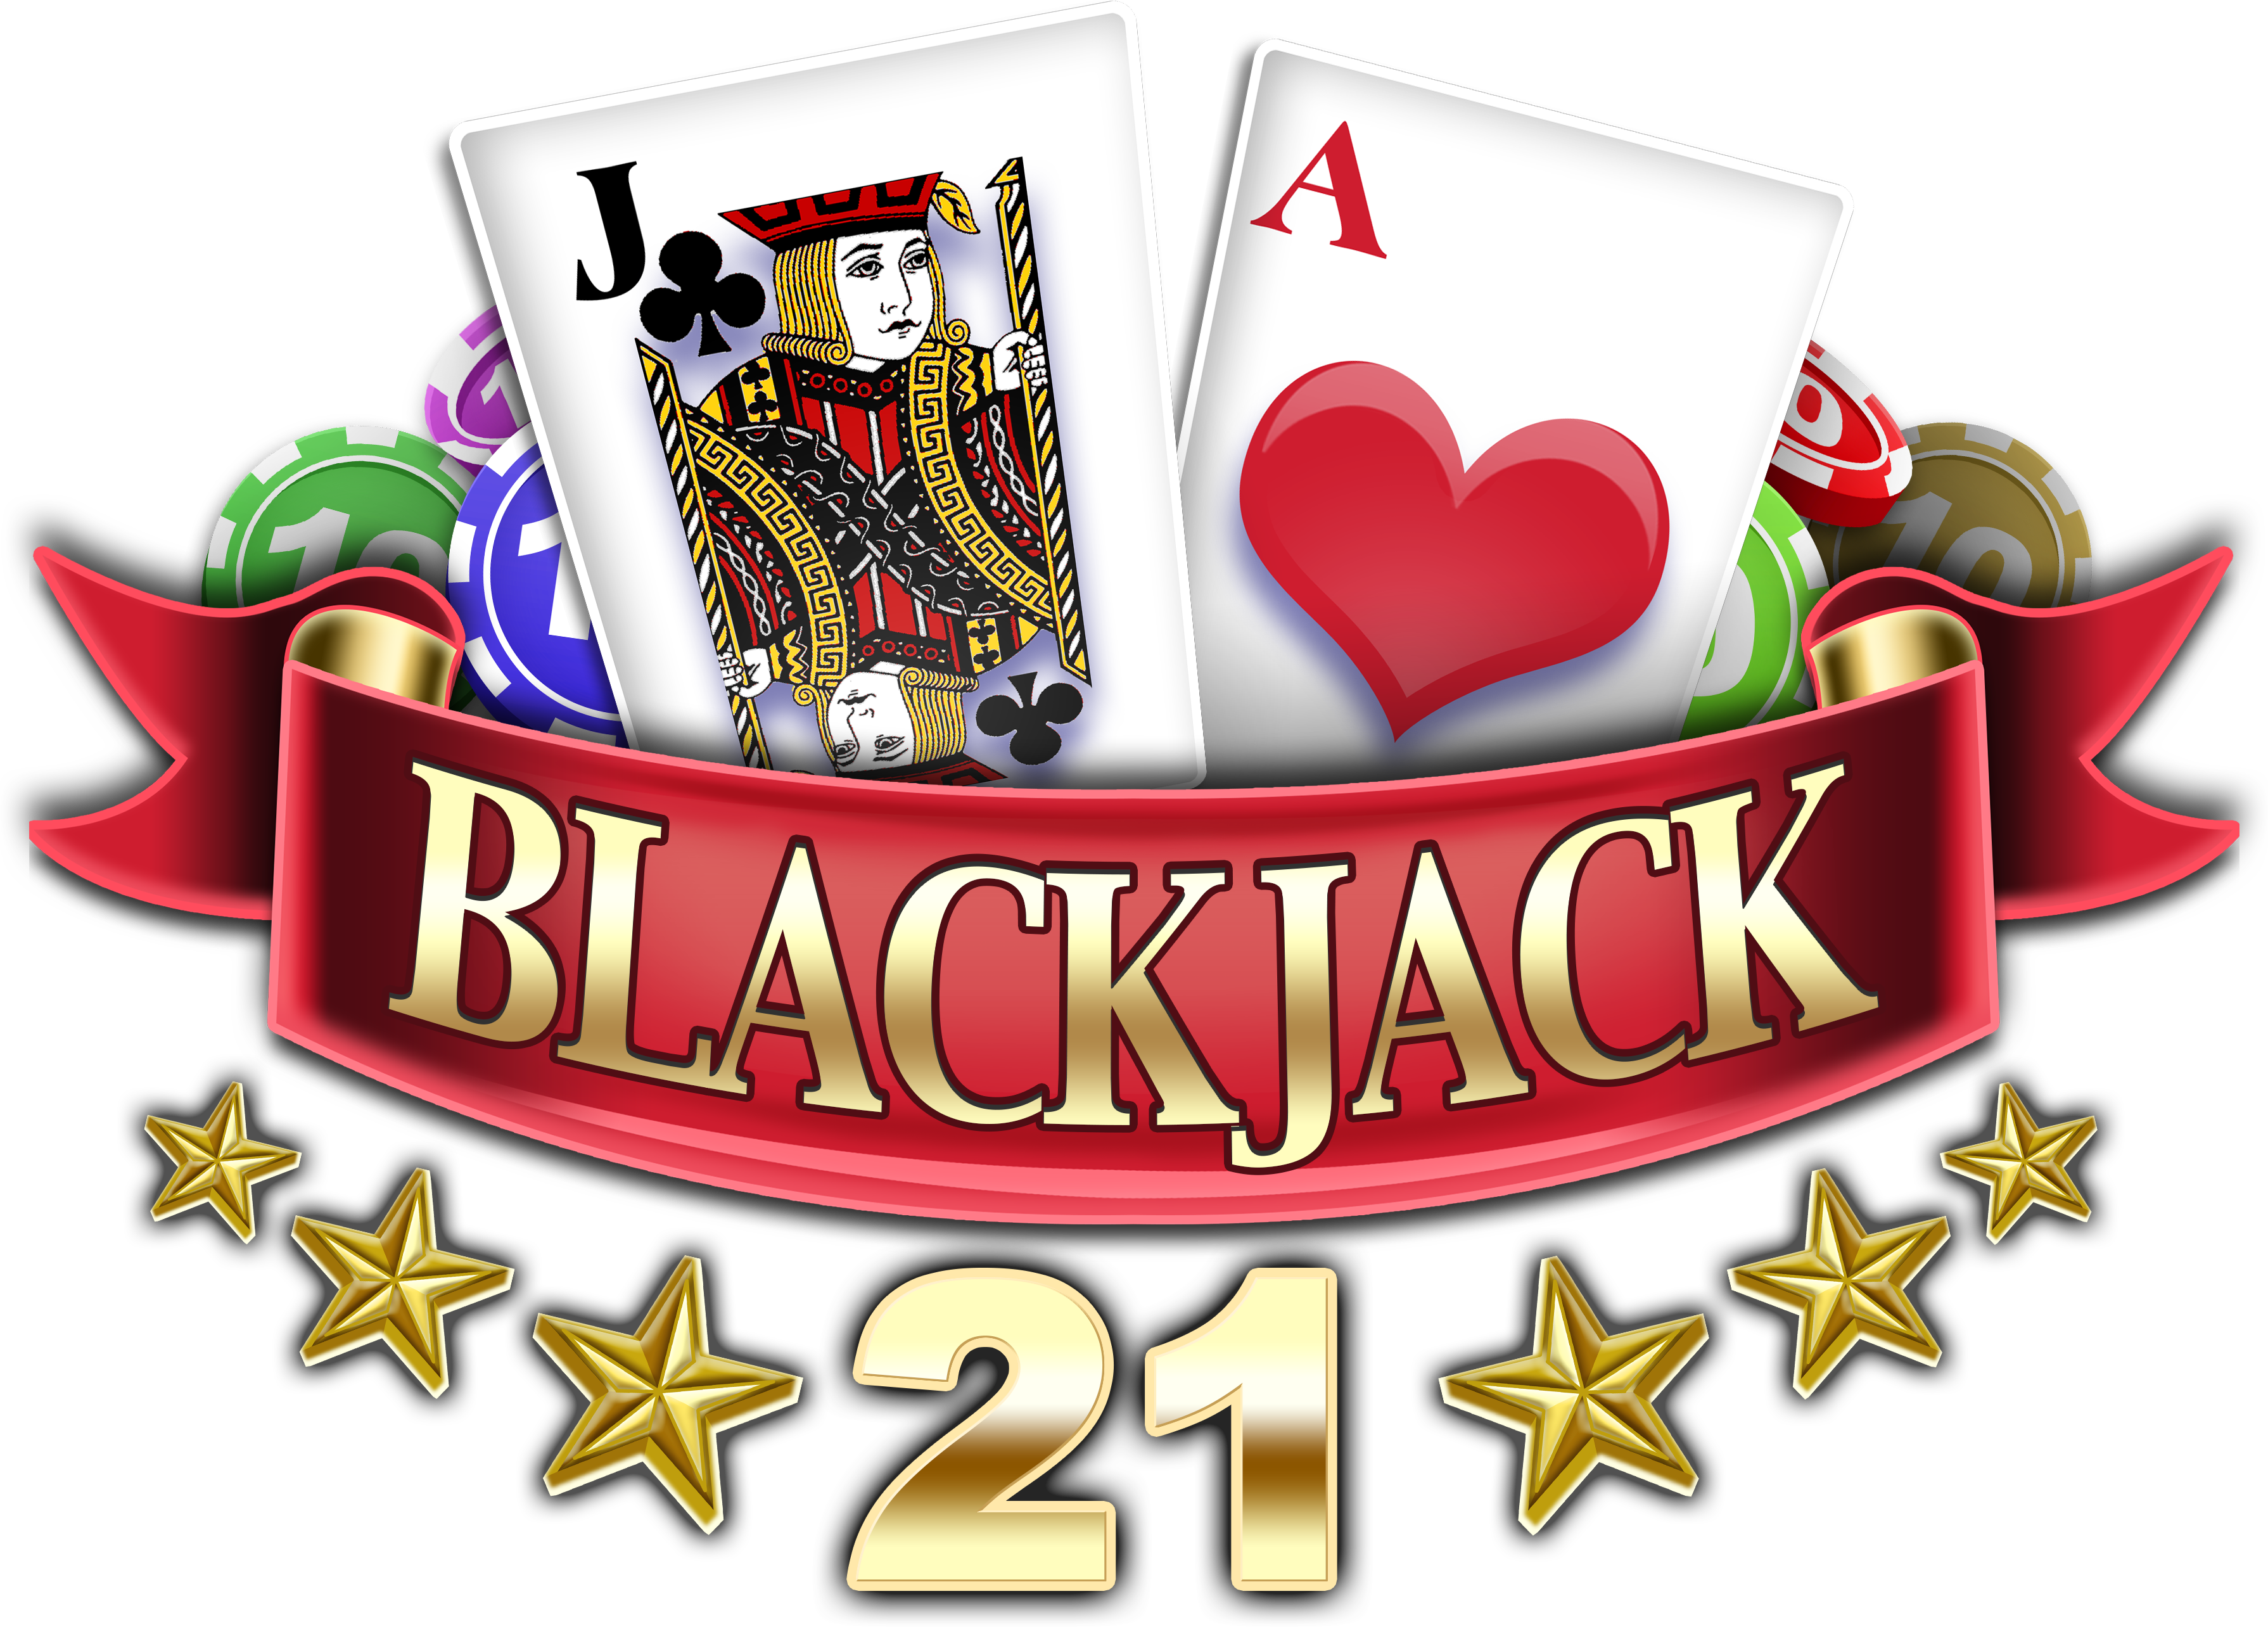 Free Blackjack Chips